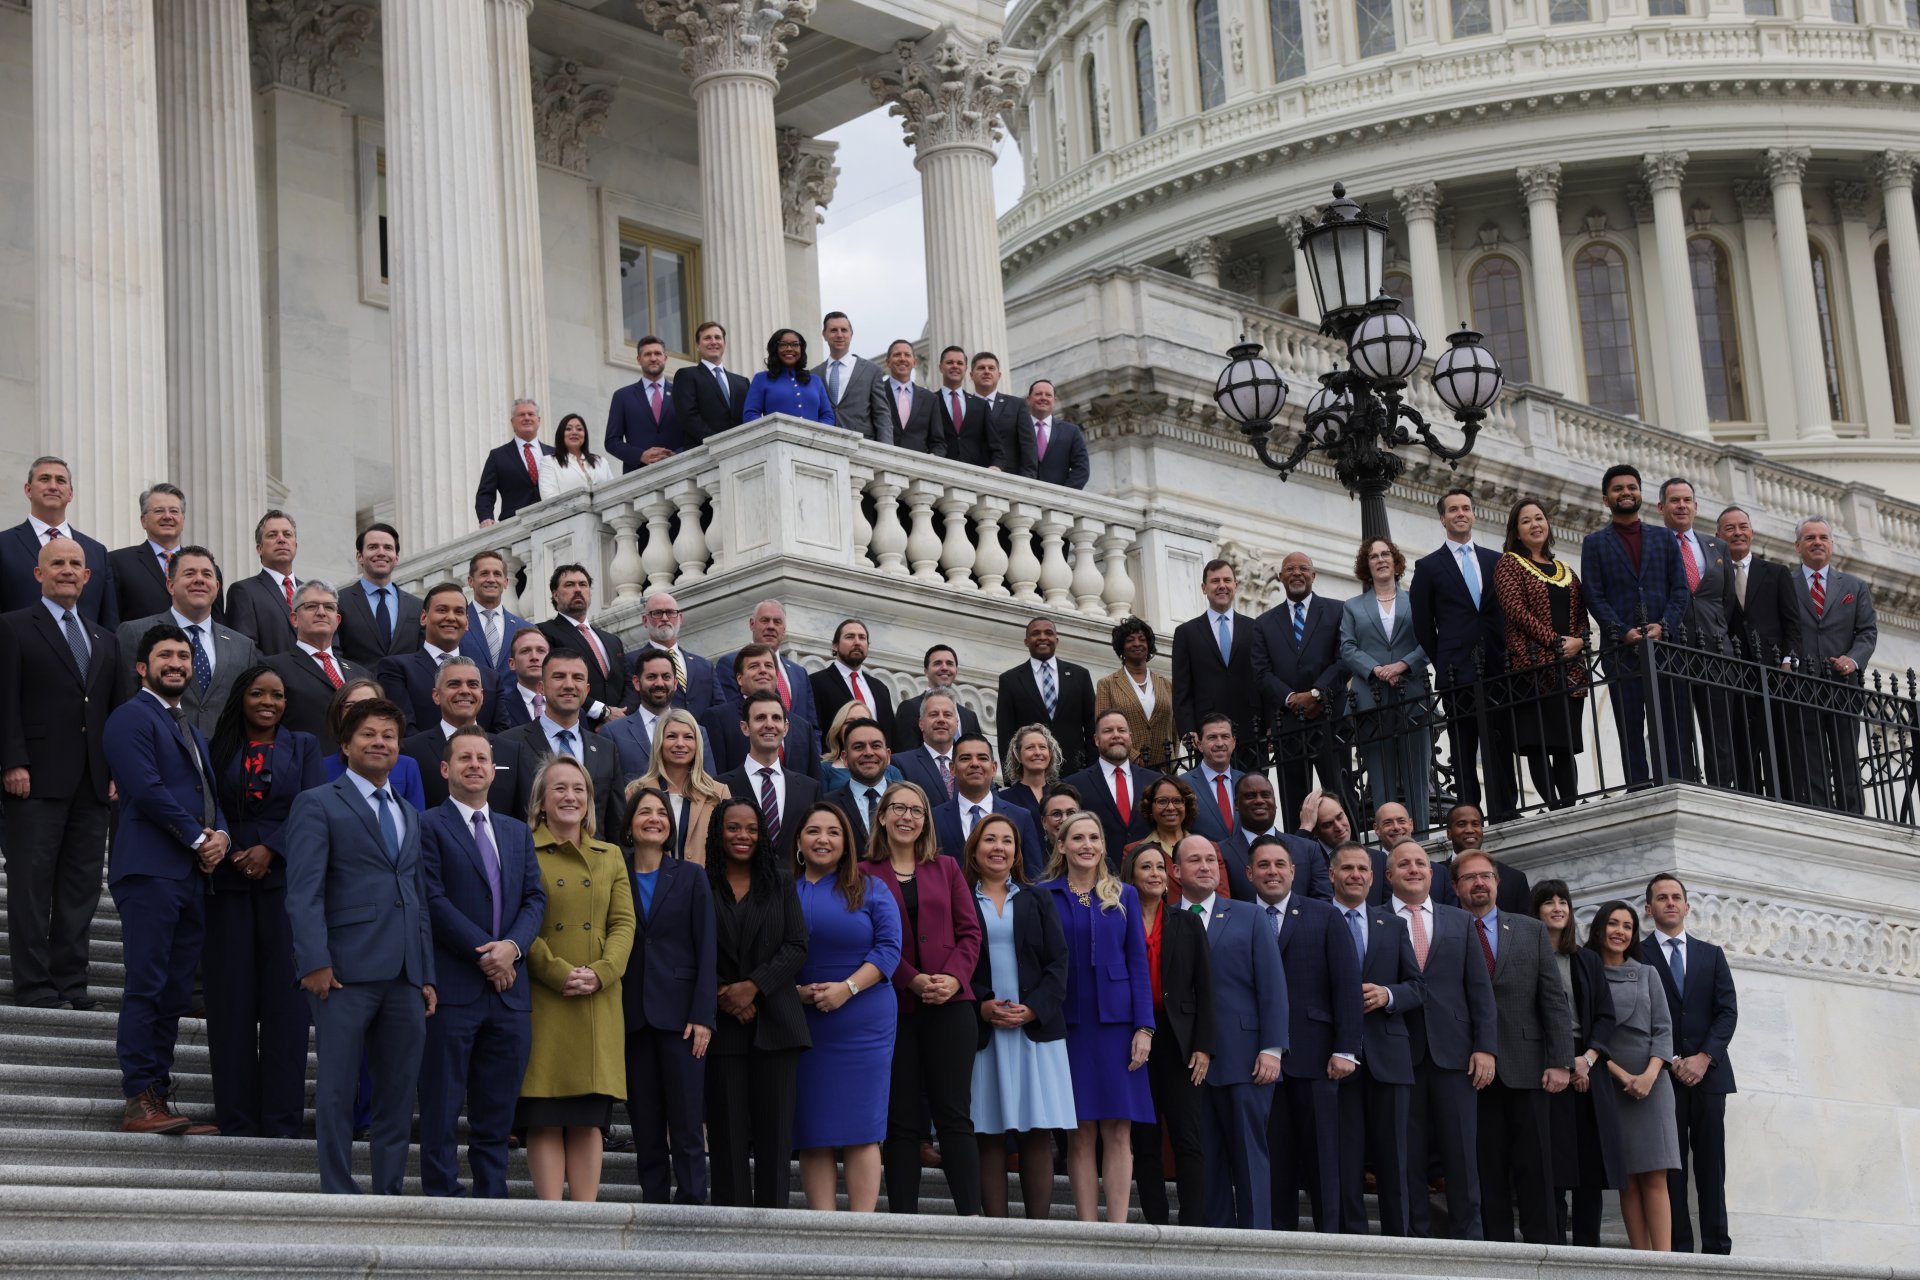  Новите членове на камарата позират за обща снимка след изборите в САЩ на източните предни стъпала на Капитолия. 